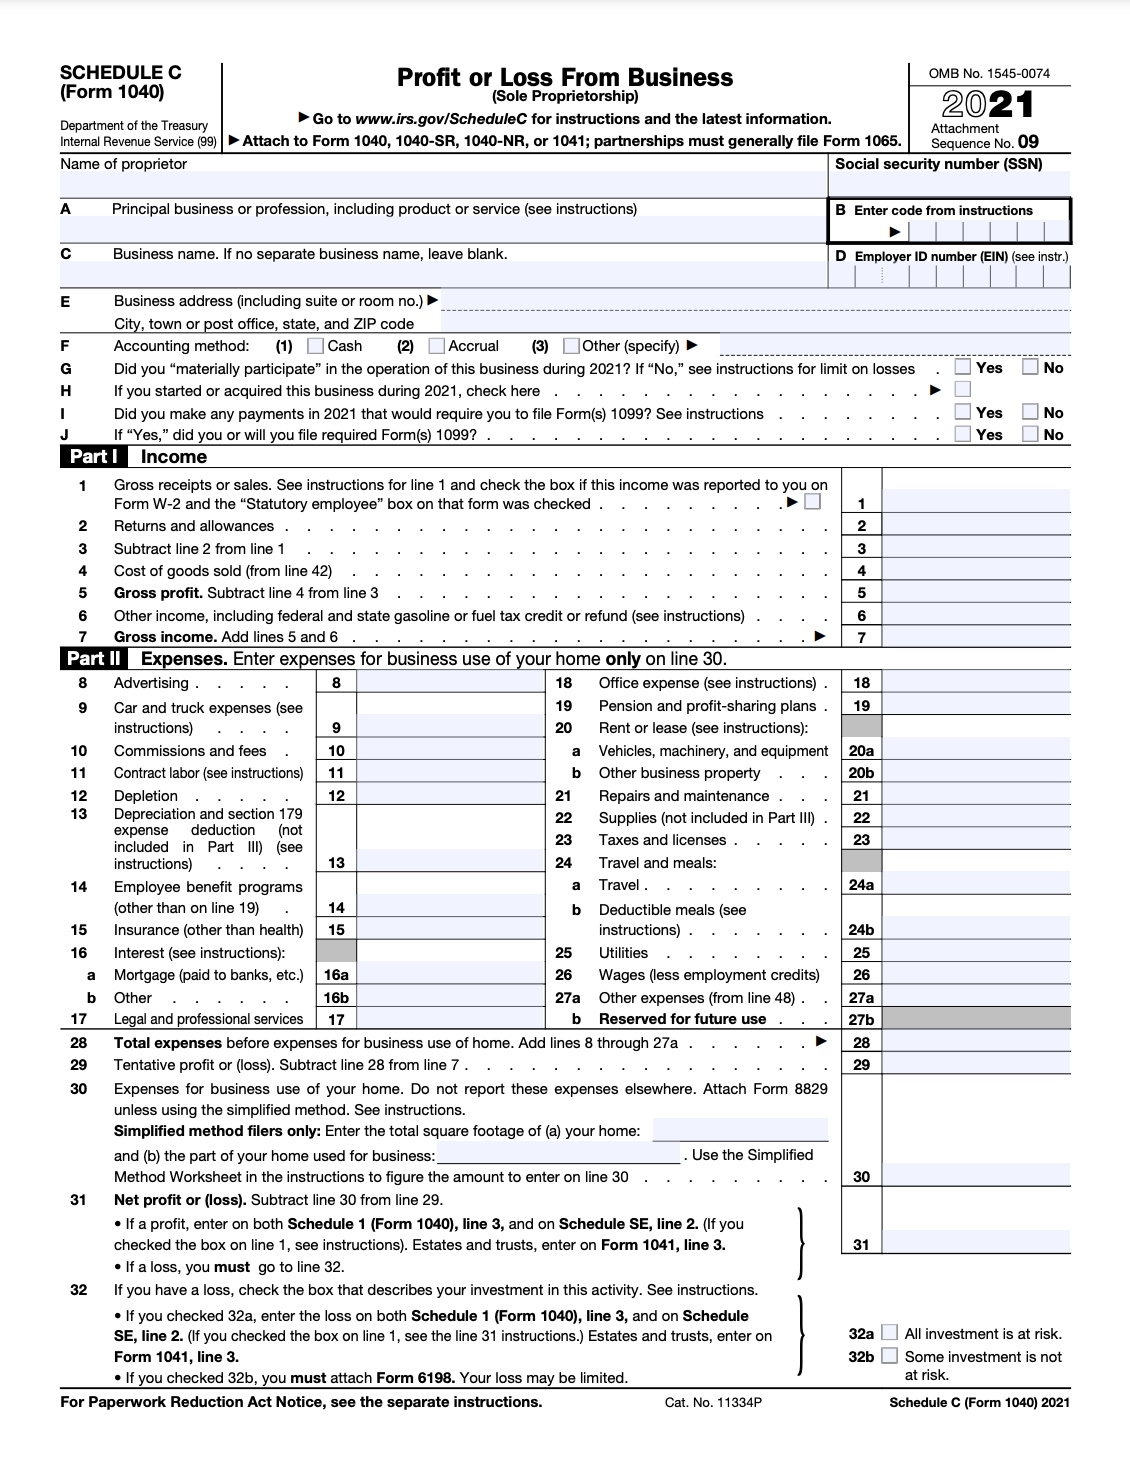 2019 tax form schedule c